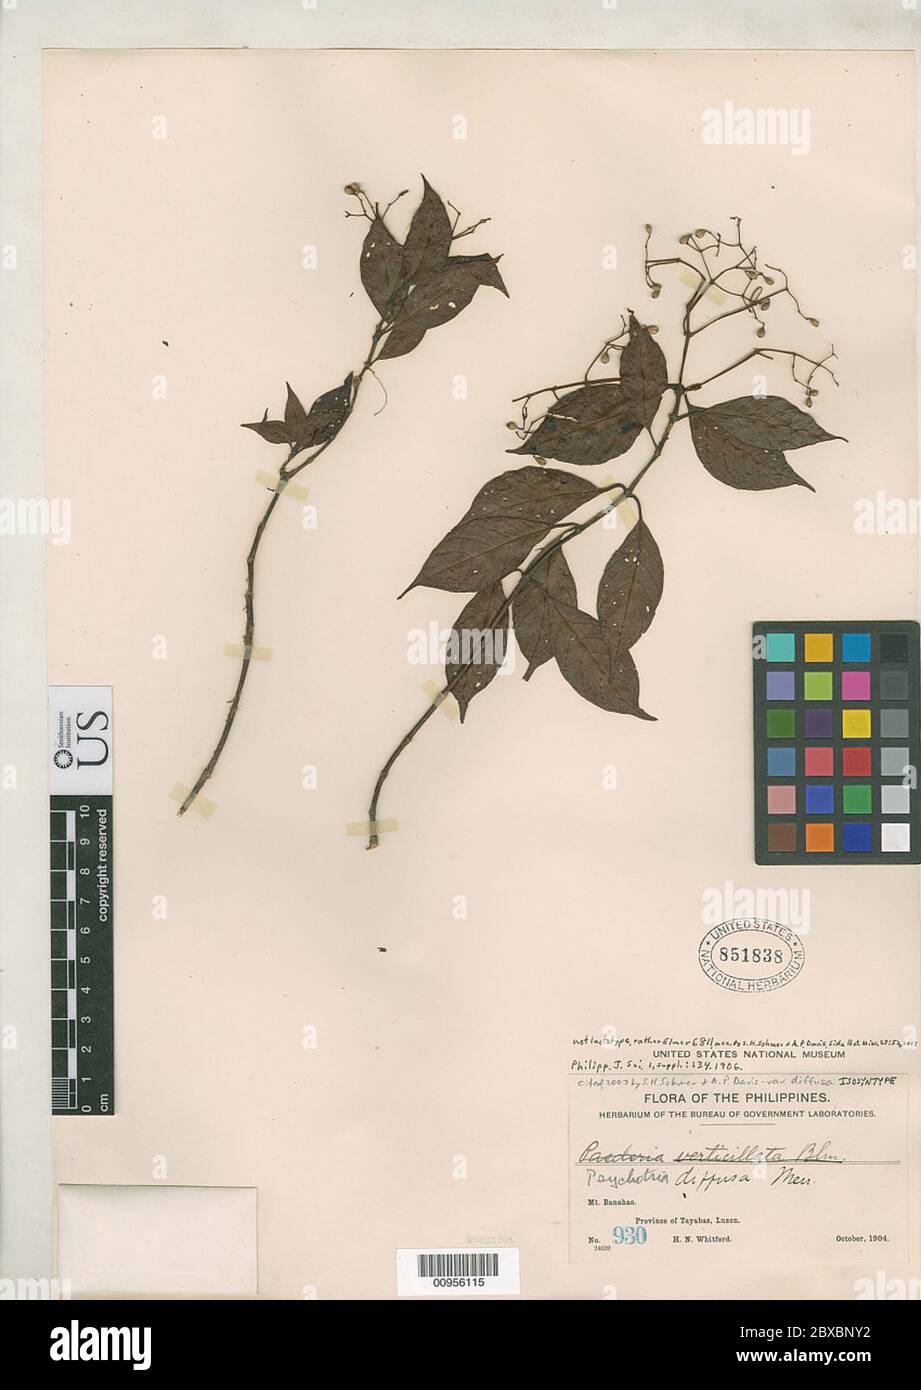 Psychotria diffusa Merr Psychotria diffusa Merr. Stock Photo